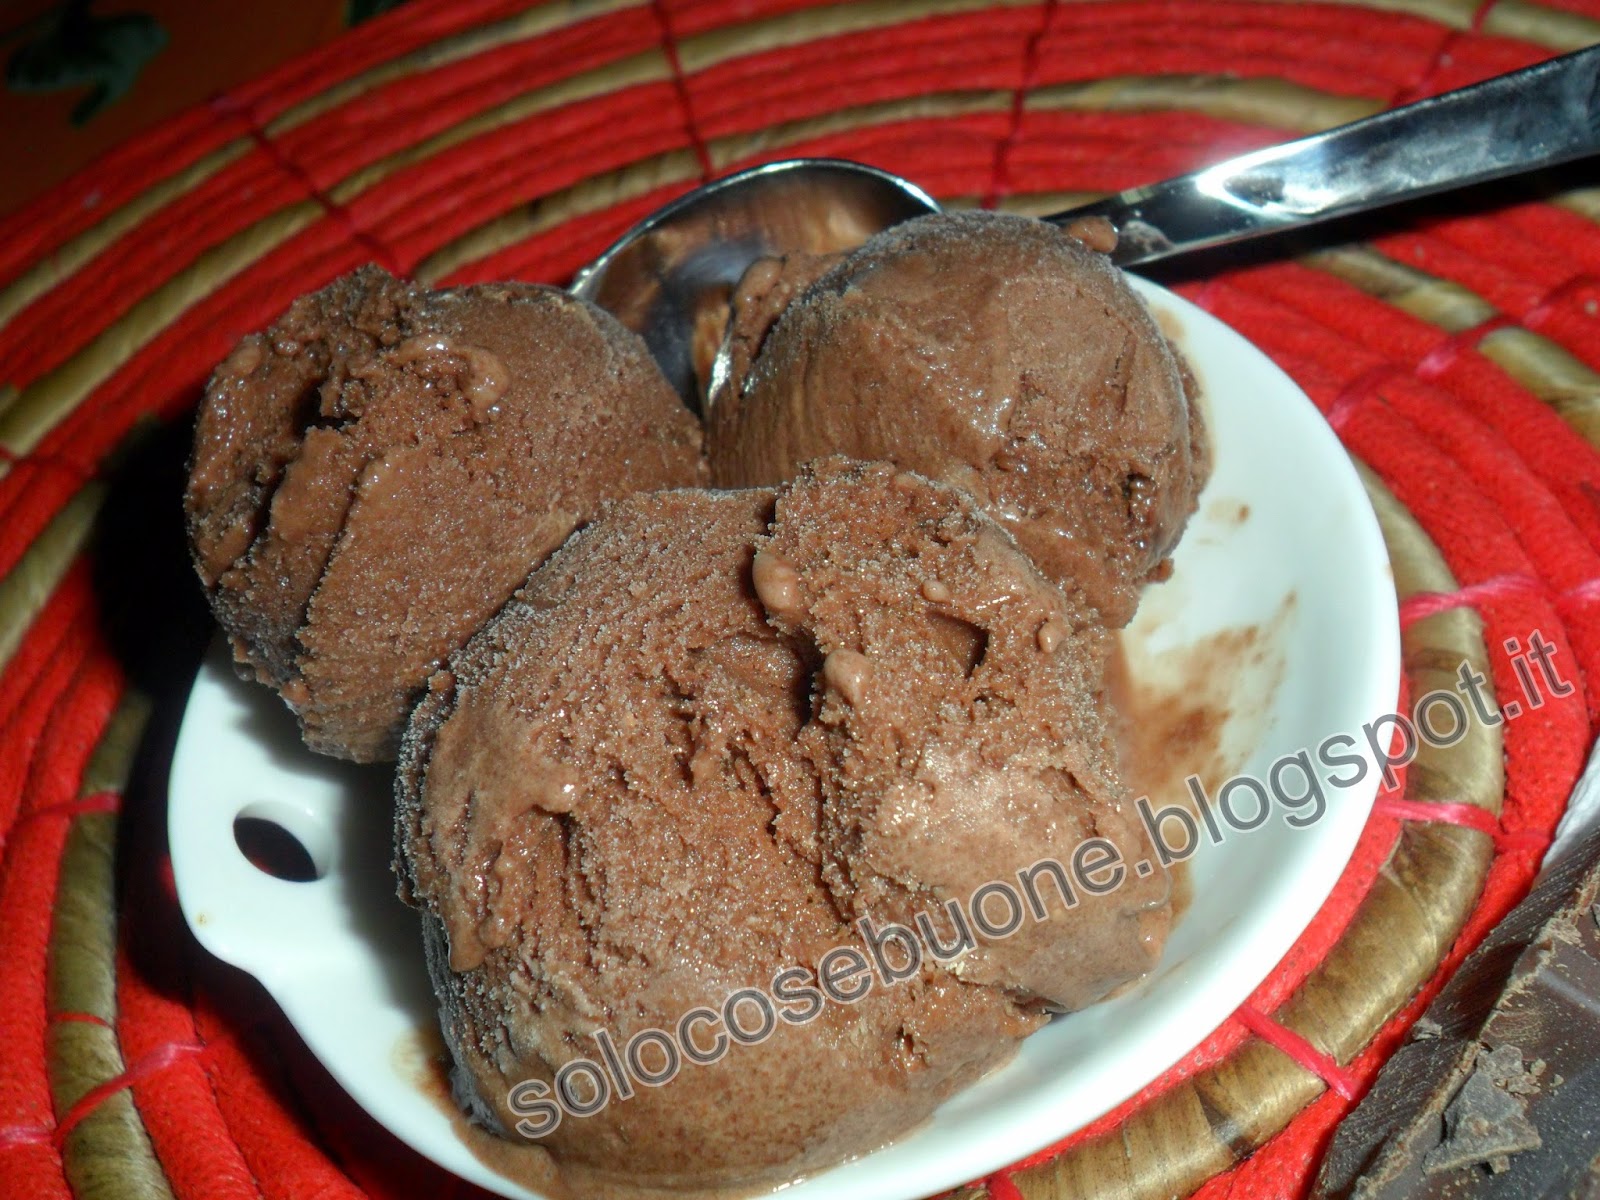 gelato al cioccolato bimby